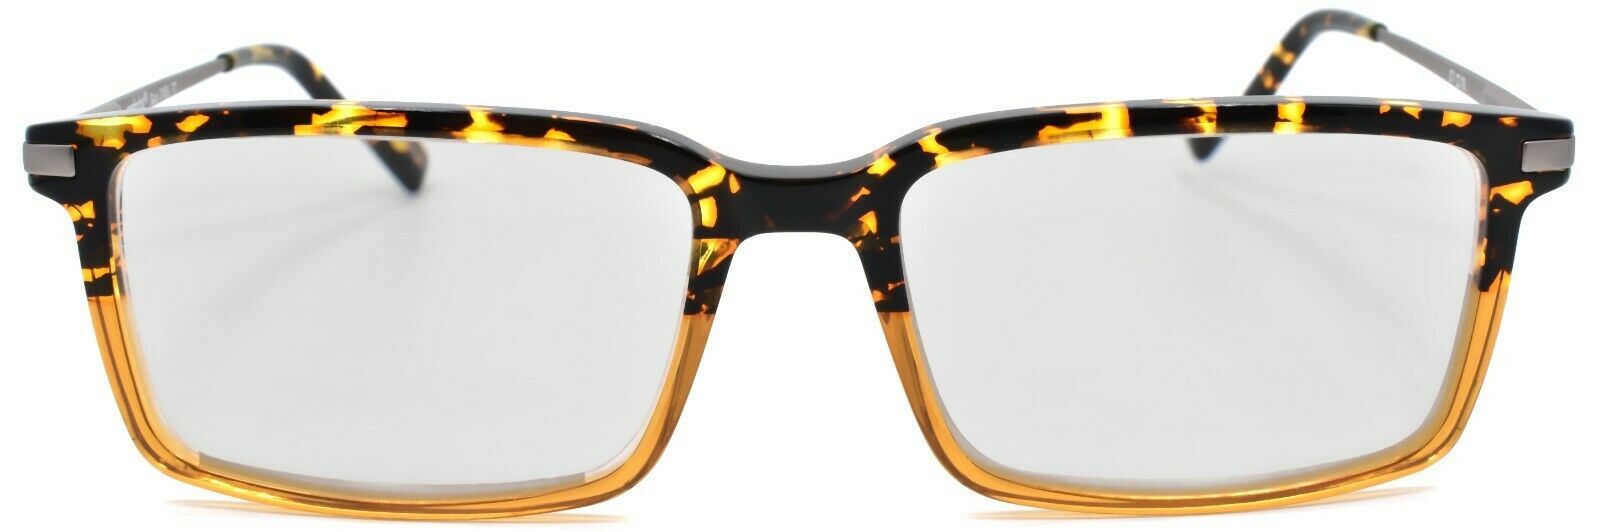 2-Eyebobs Gus 3155 77 Men's Reading Glasses Amber Tortoise / Light Gunmetal +2.00-842754172127-IKSpecs